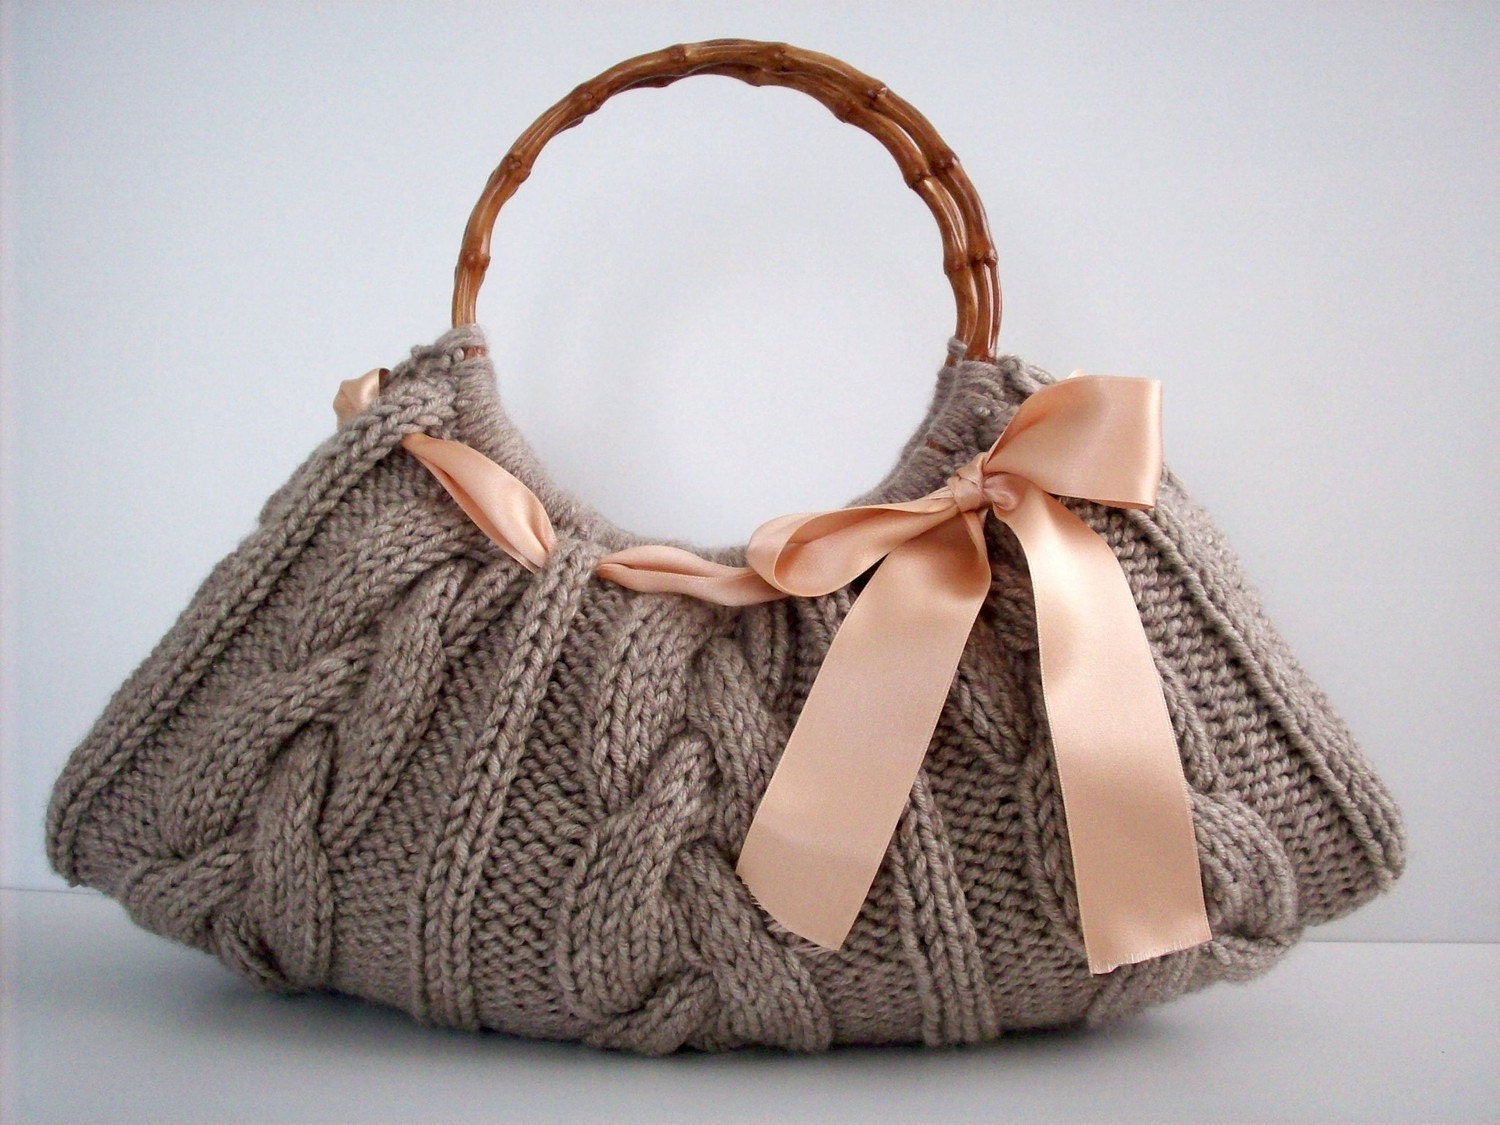 NzLbags Handmade - Handbag - Shoulder Bag - Everyday Bag-Beige Knitted Nr - 087